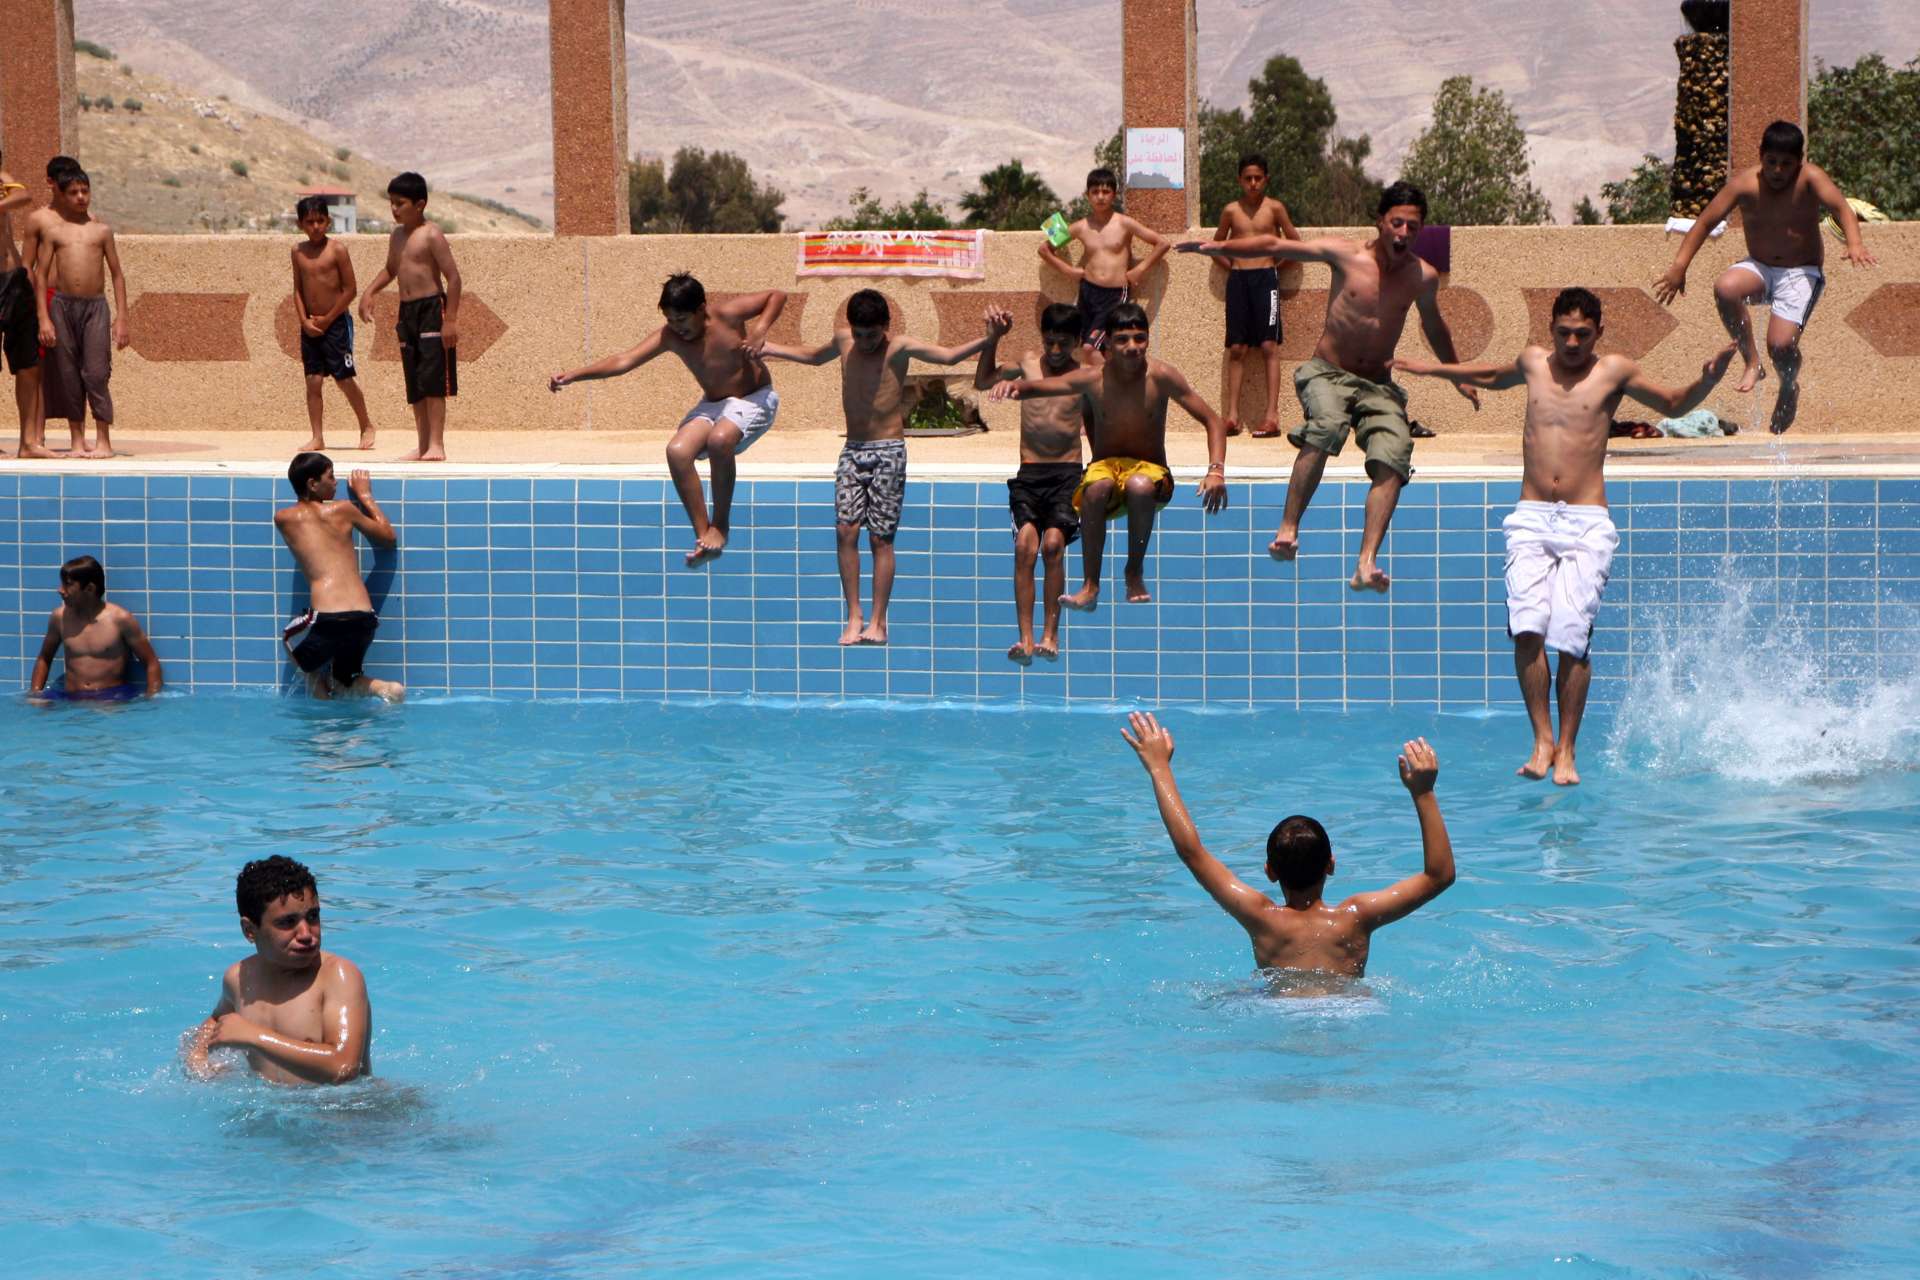 Des jeunes se rafraîchissent dans une piscine à Bathan, près de Naplouse. Photo prise par Nasser Ishtayeh en juin 2010 (AP)